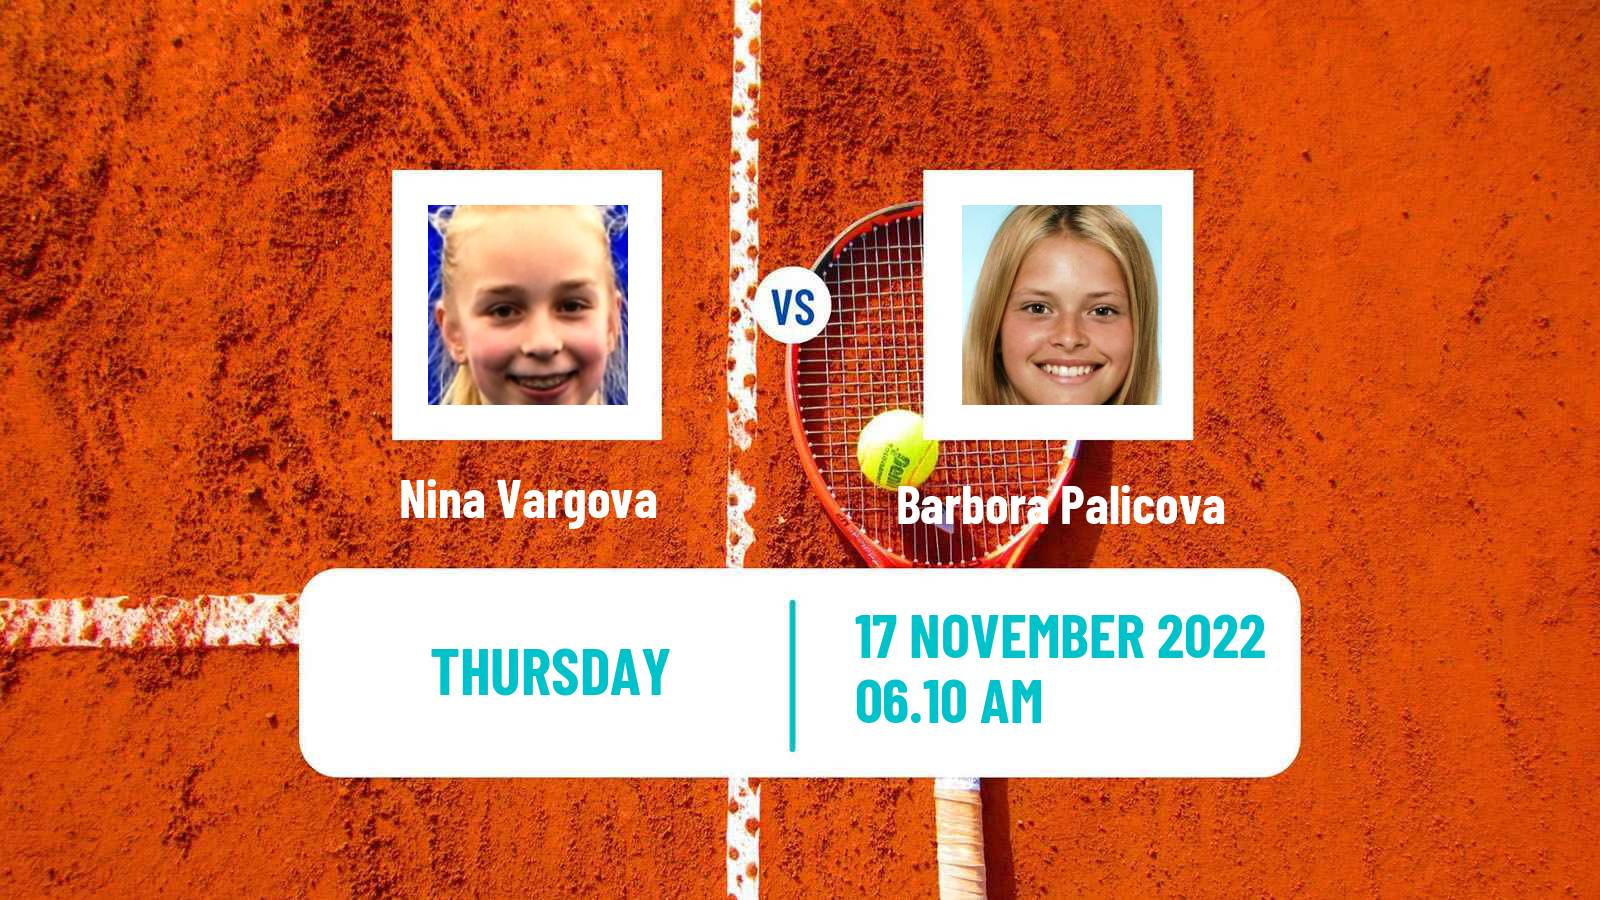 Tennis ITF Tournaments Nina Vargova - Barbora Palicova